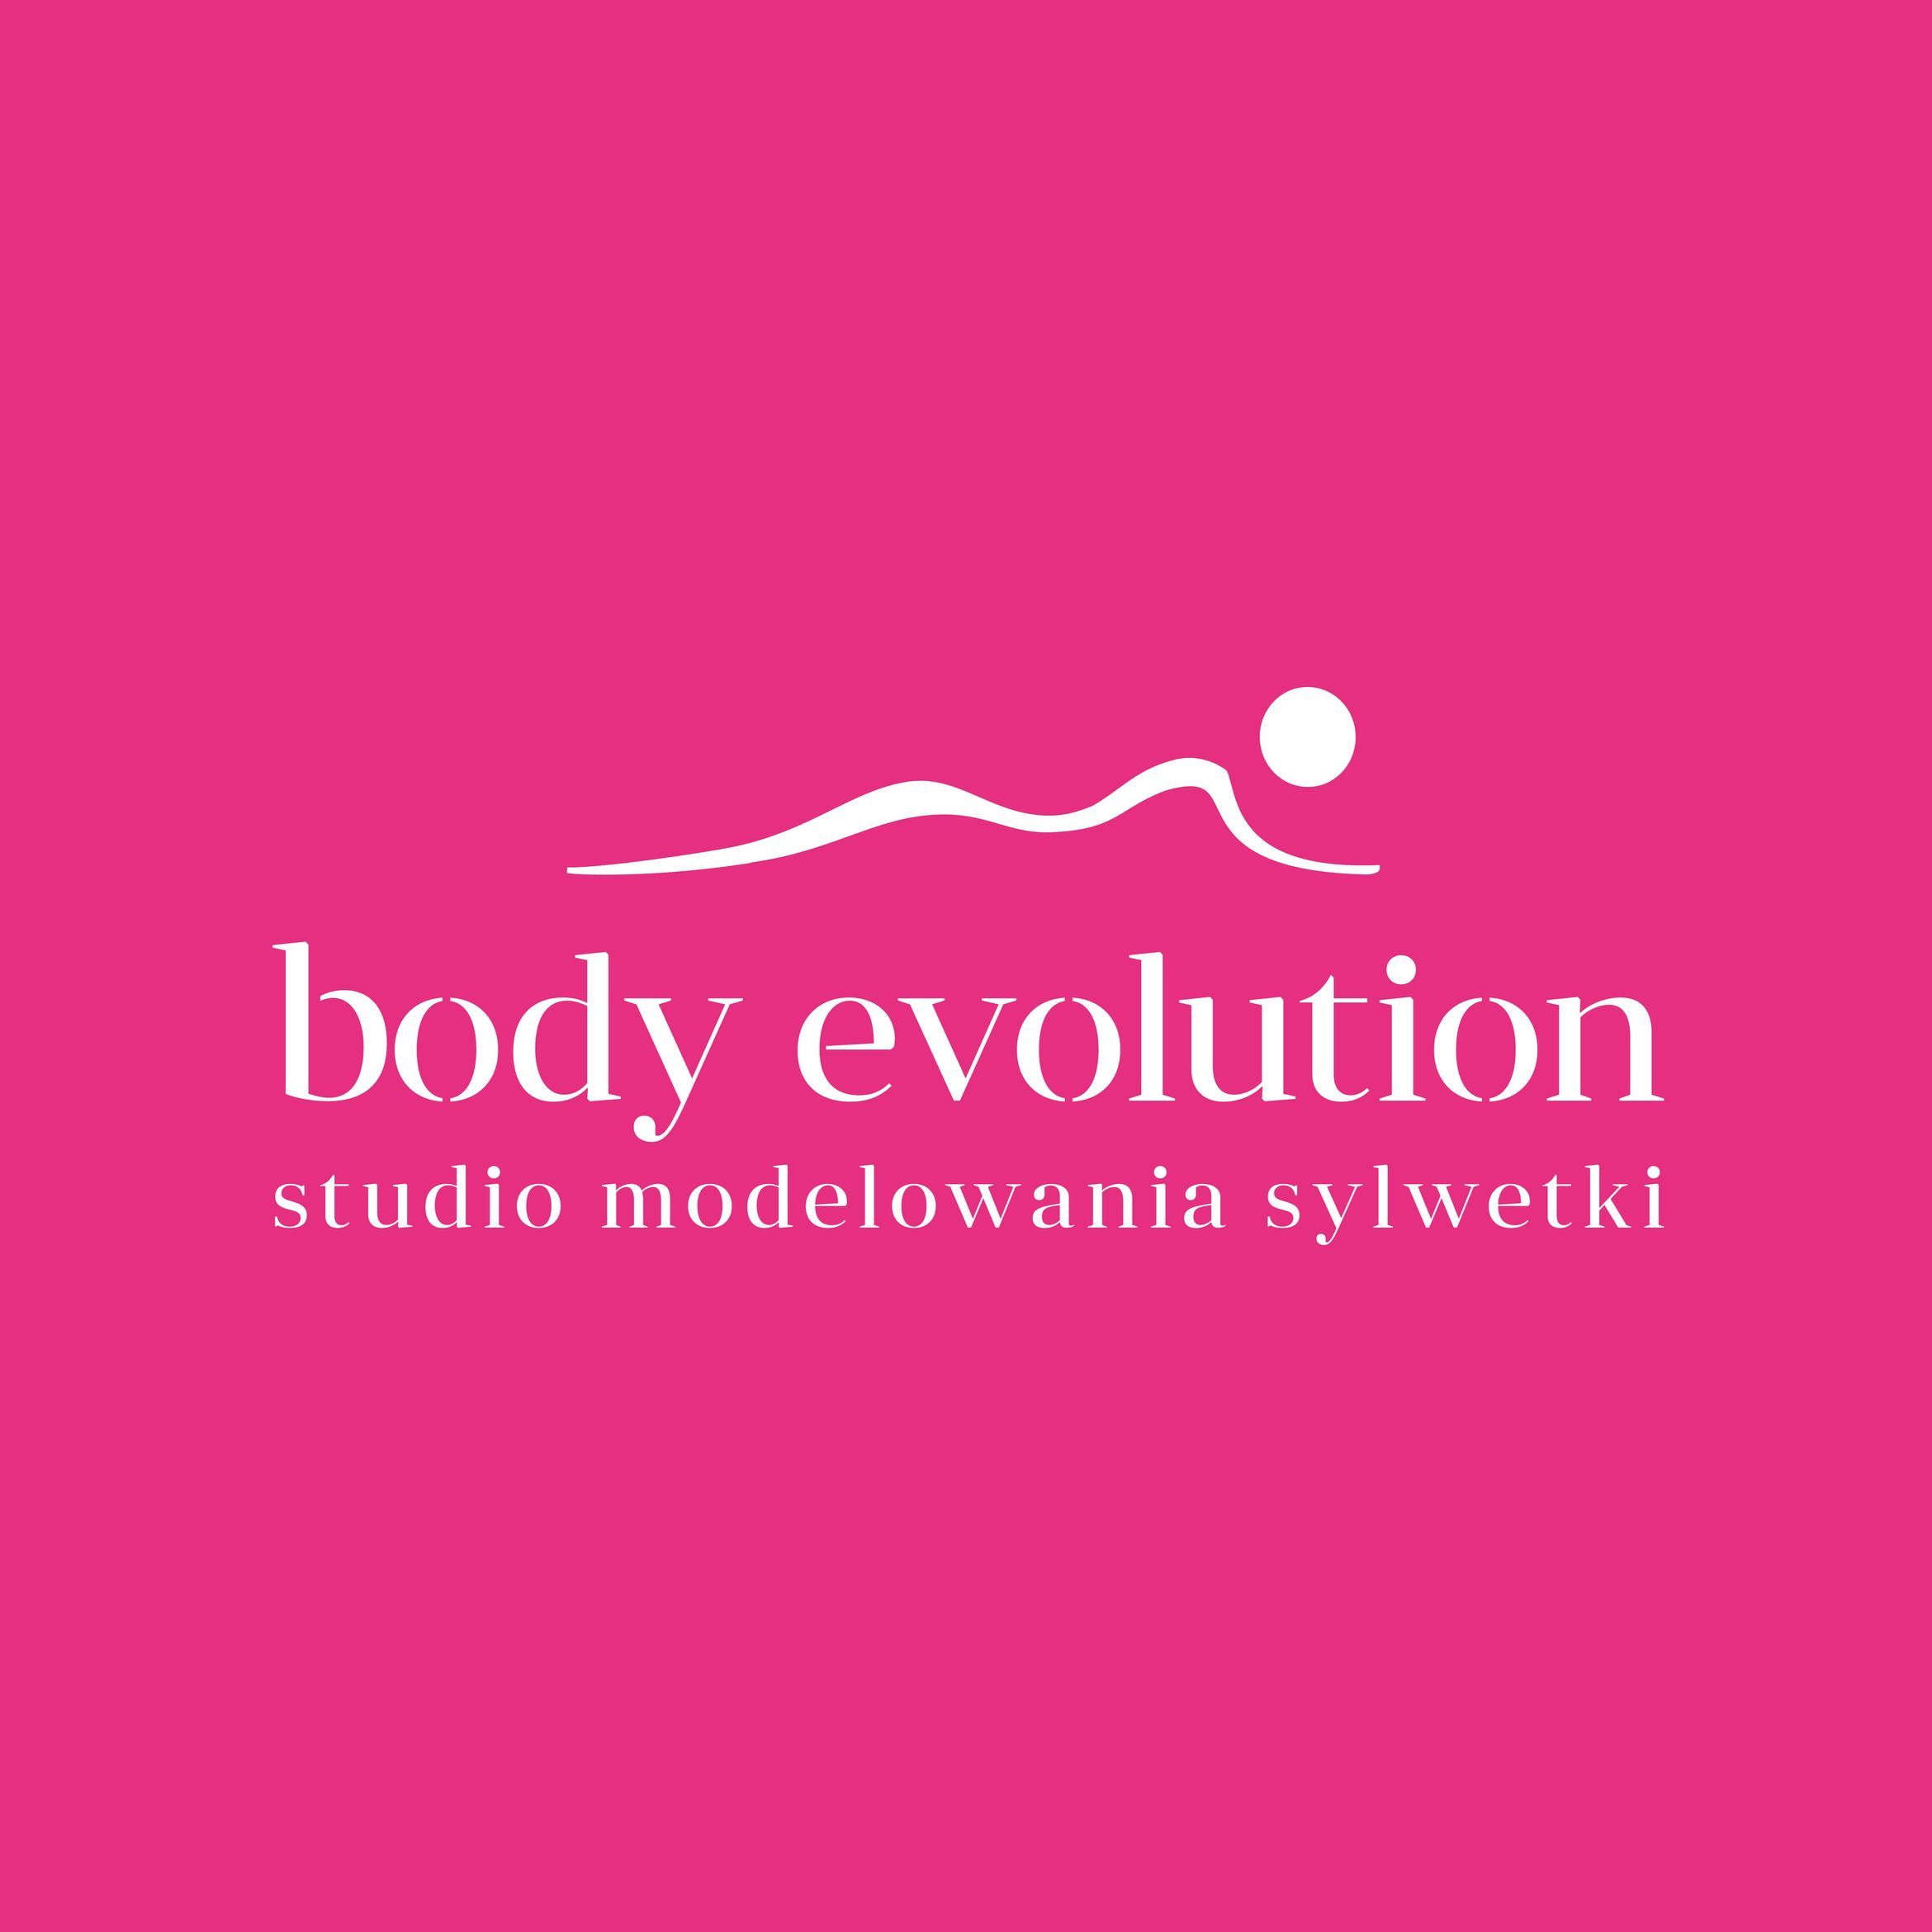 Body Evolution Ursus, ulica Dzieci Warszawy 27A, lokal 210, 02-495, Warszawa, Ursus